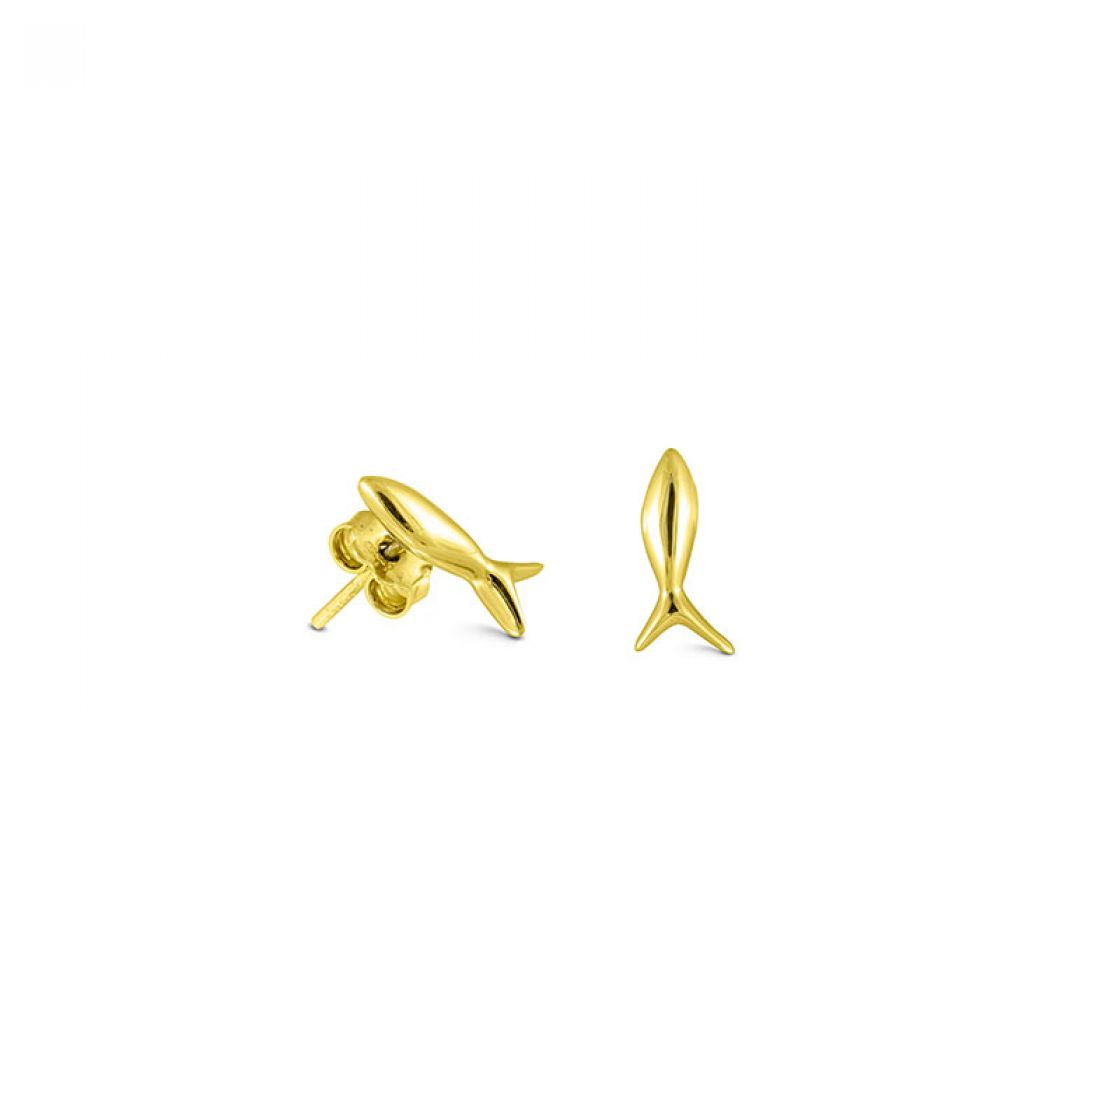 Beautiful pair of small gold fish stud earrings